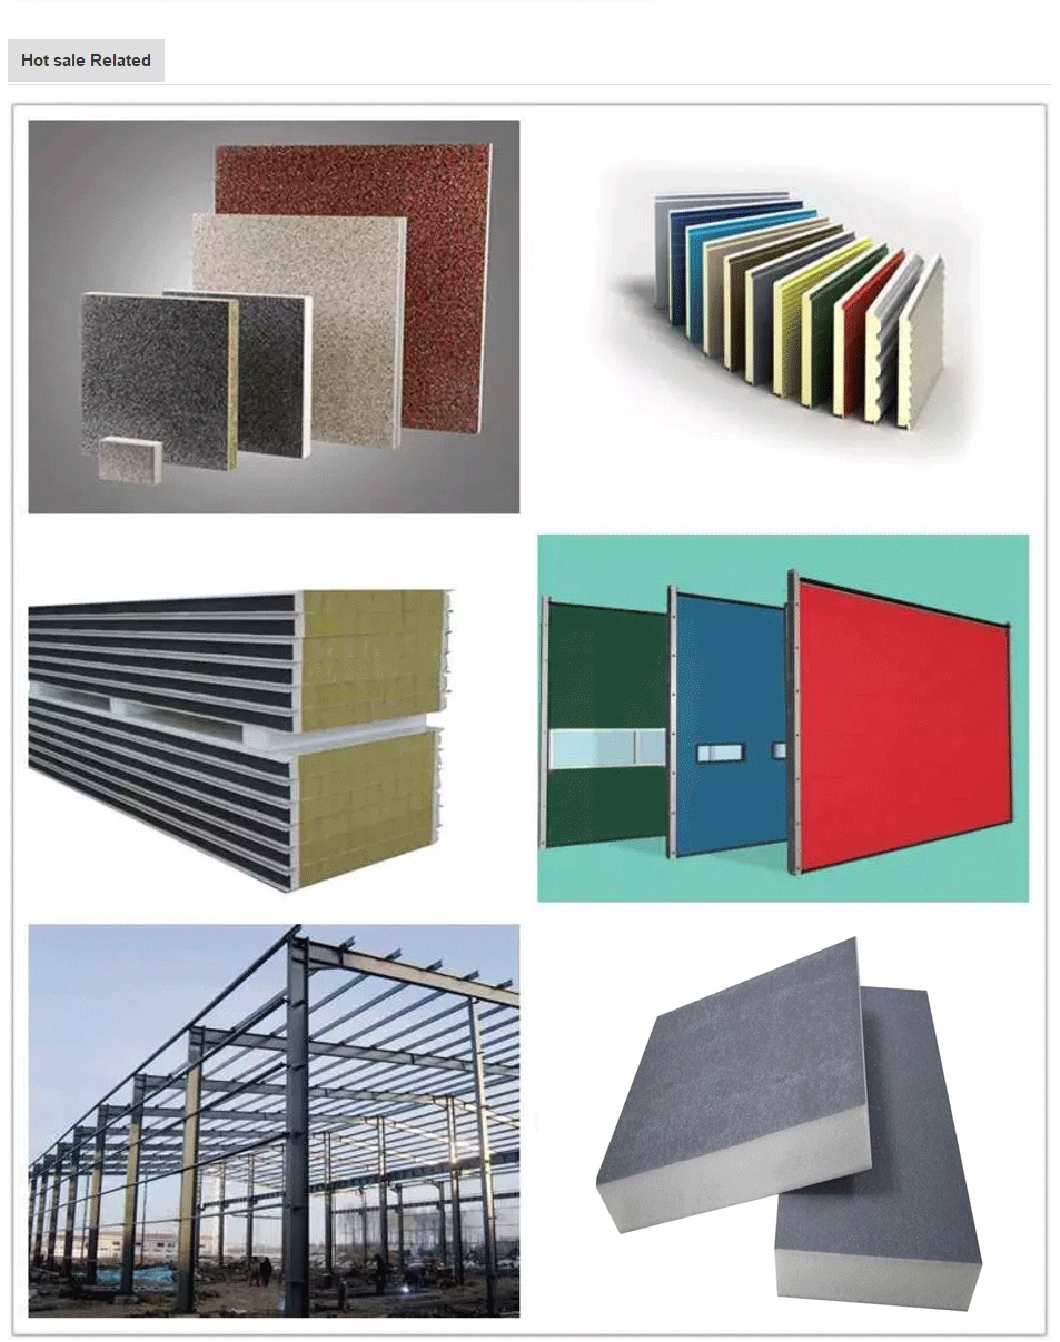 Factory External Building Materials Cladding Material Fiberglass Wool Sandwich Wall Panel